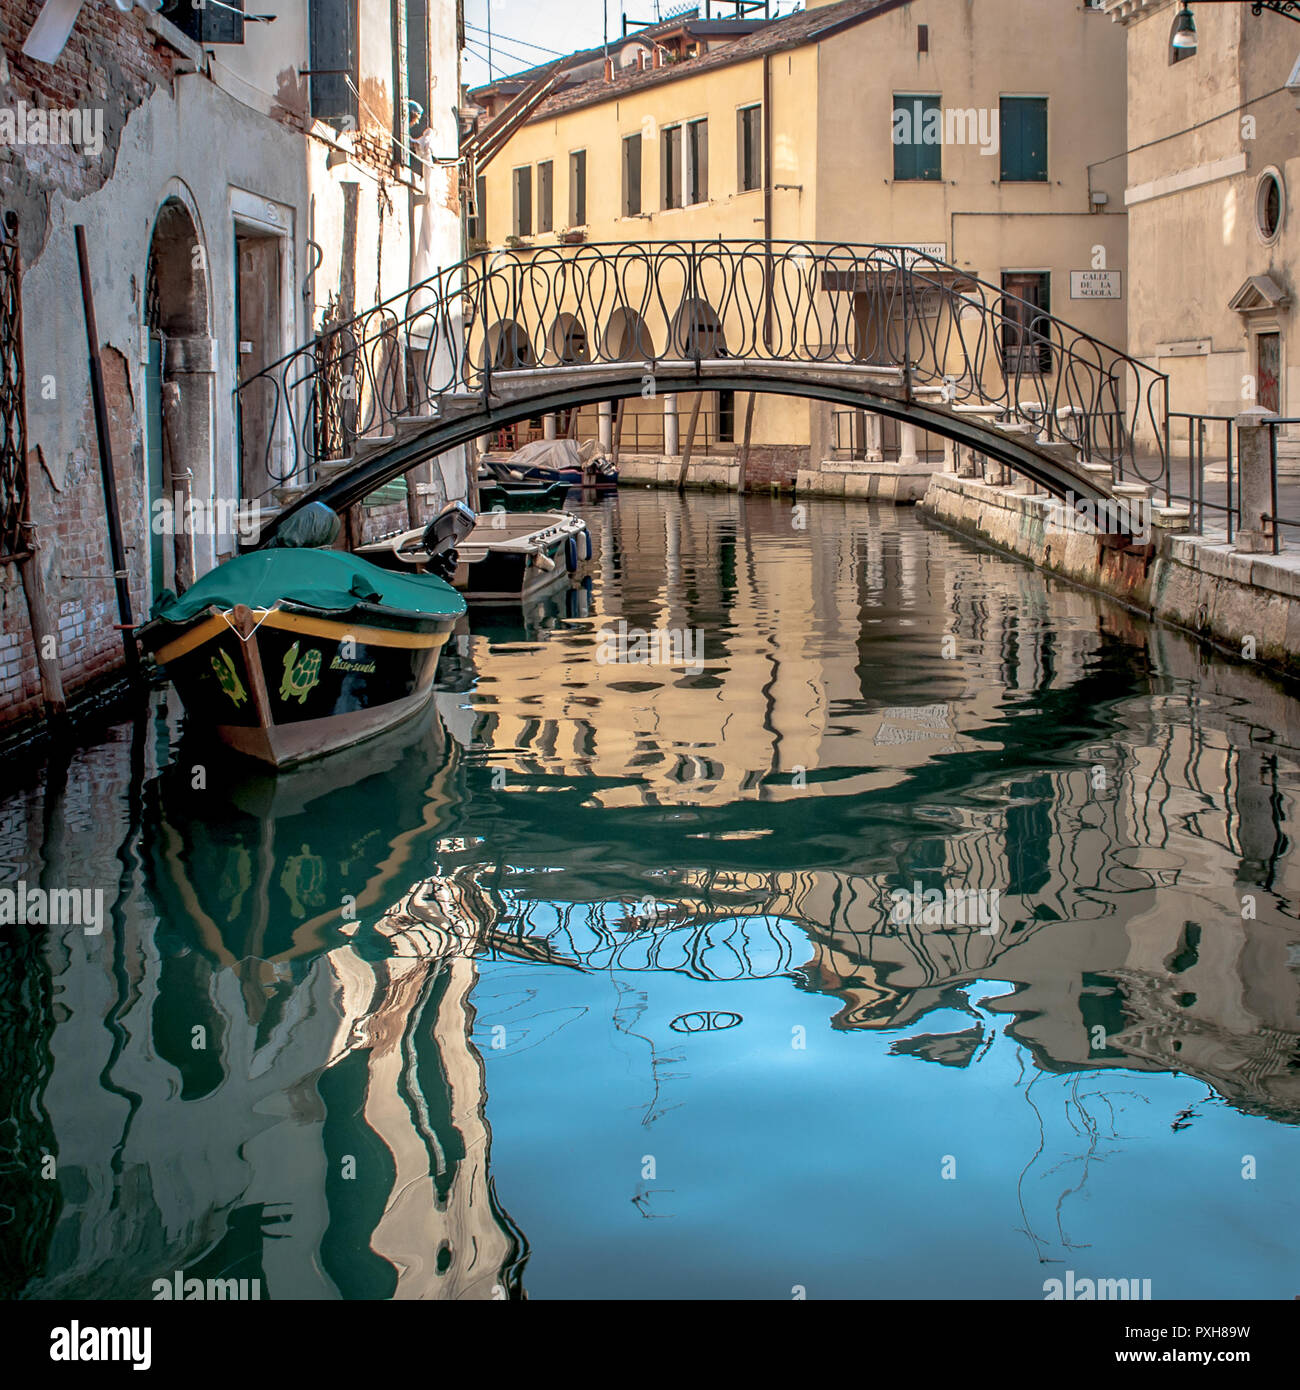 Venedig ist die Hauptstadt der Region Venetien in Norditalien und wurde auf mehr als 100 kleinen Inseln in einer Adria-Lagune erbaut. Stock Photo